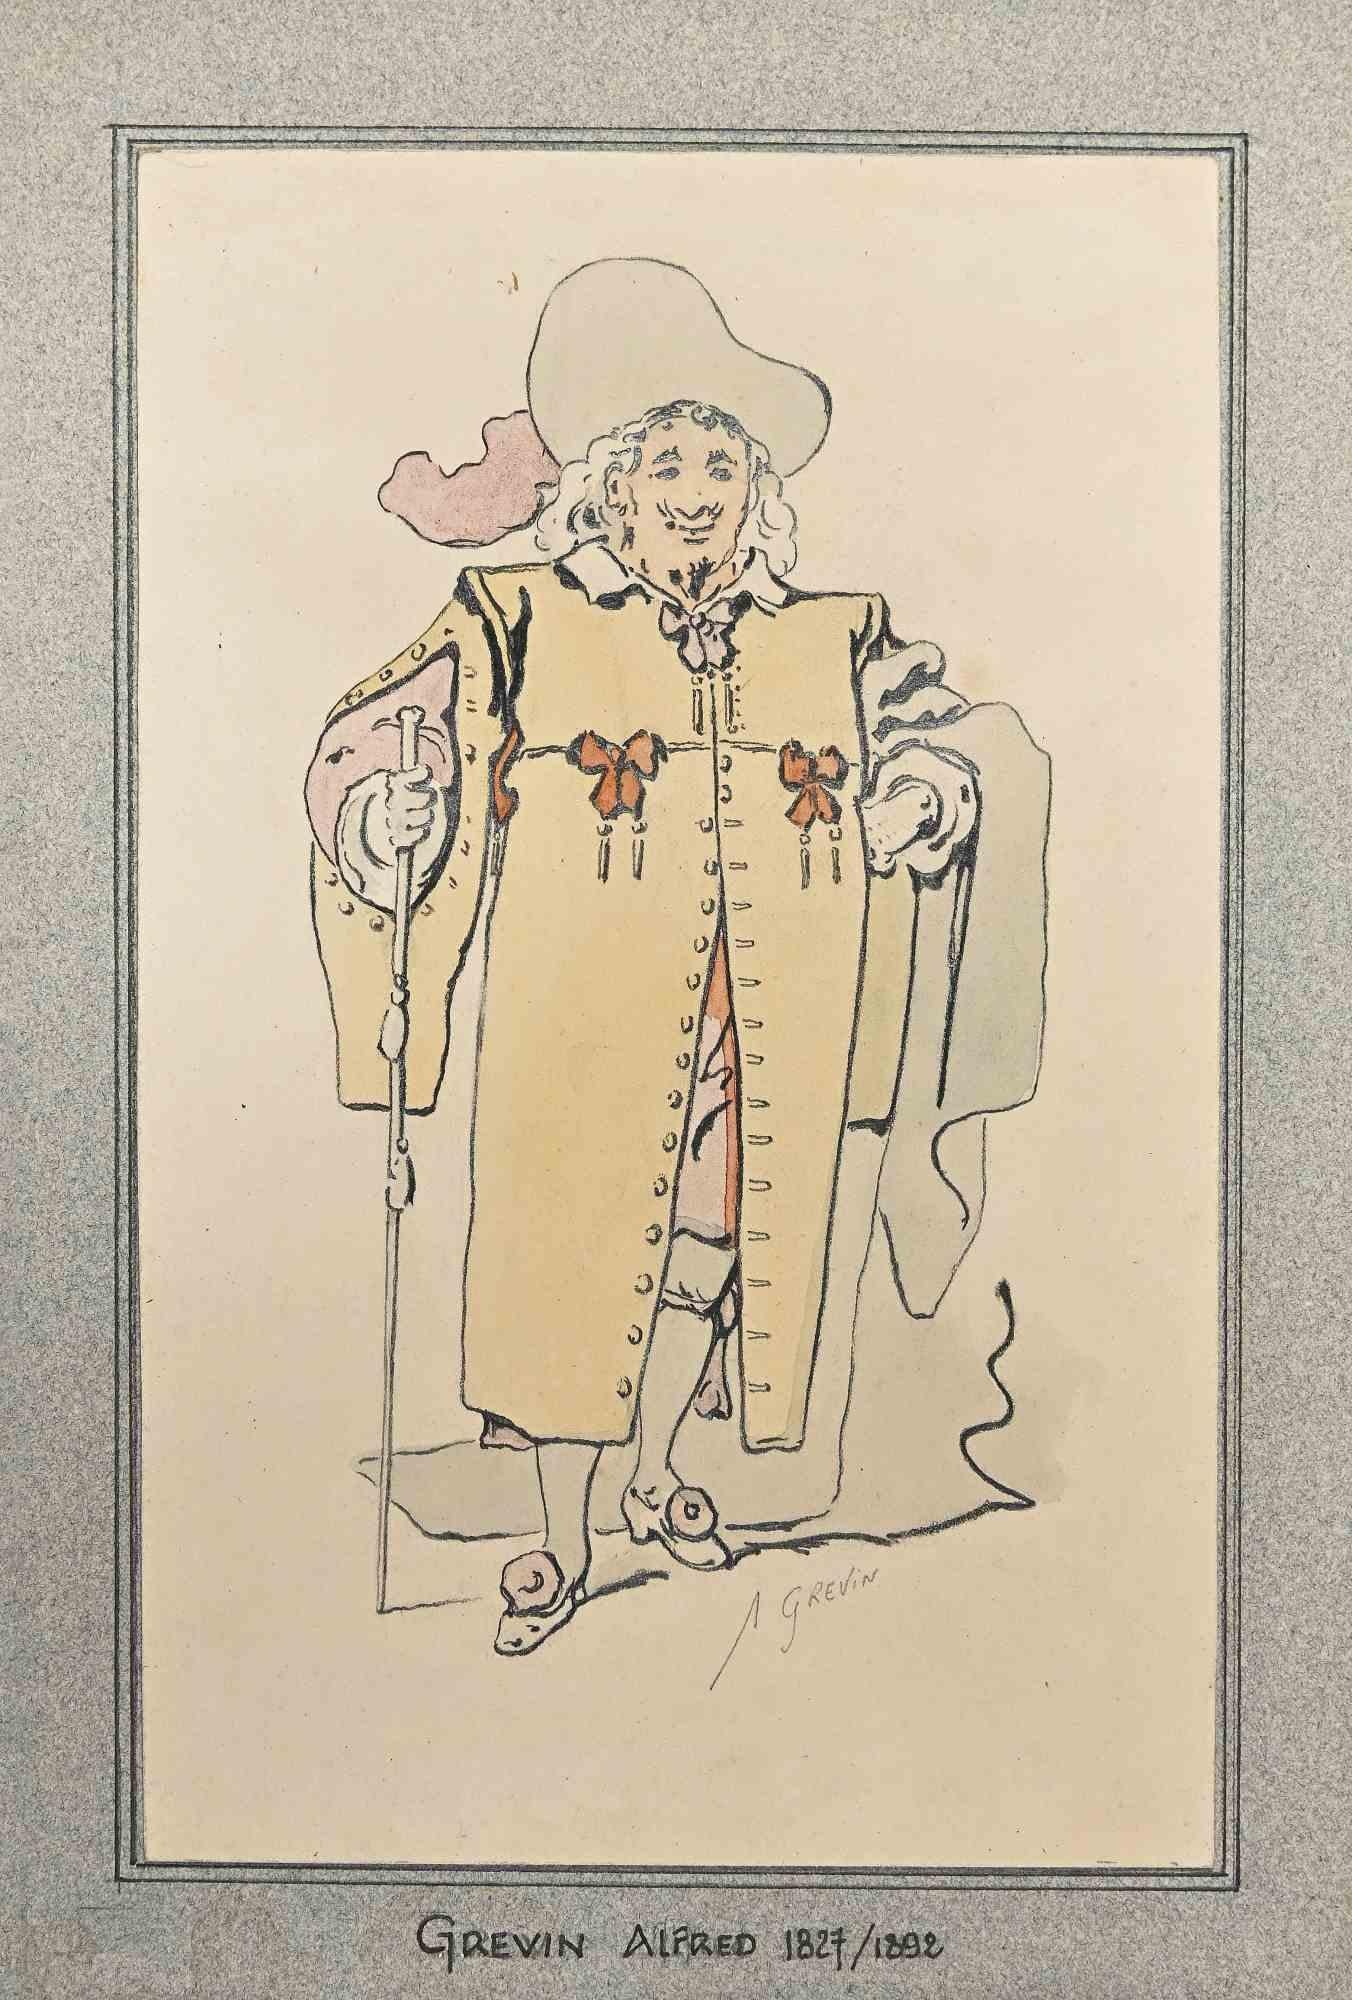 Das Porträt eines Gentleman ist eine Zeichnung in Bleistift, Kohle und Aquarell von Alfred Grévin aus dem späten 19.

Angewandt auf ein Passeprtout.

Handsigniert mit Bleistift

In gutem Zustand.